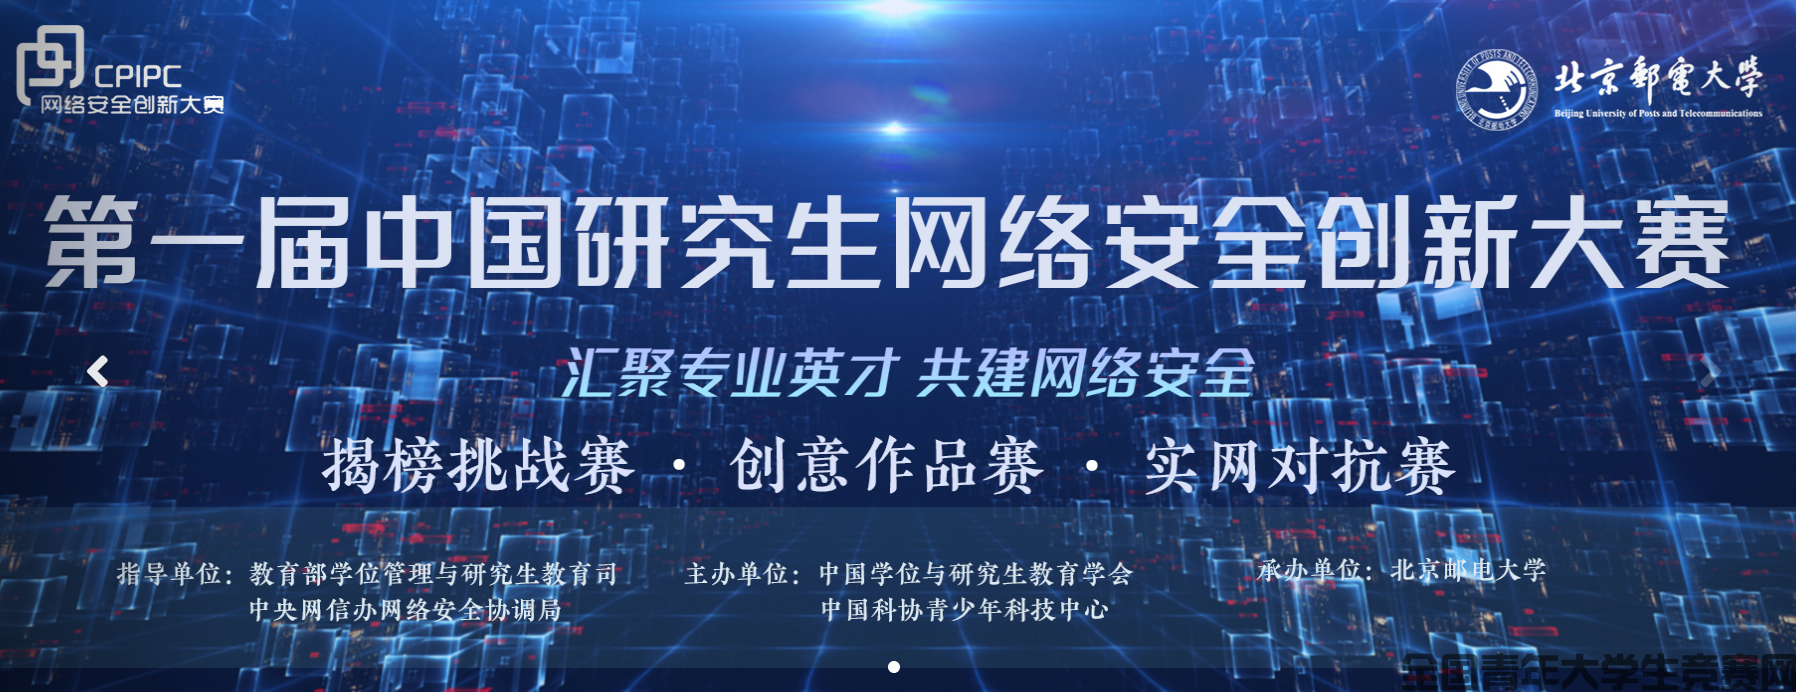 第一届中国研究生网络安全创新大赛